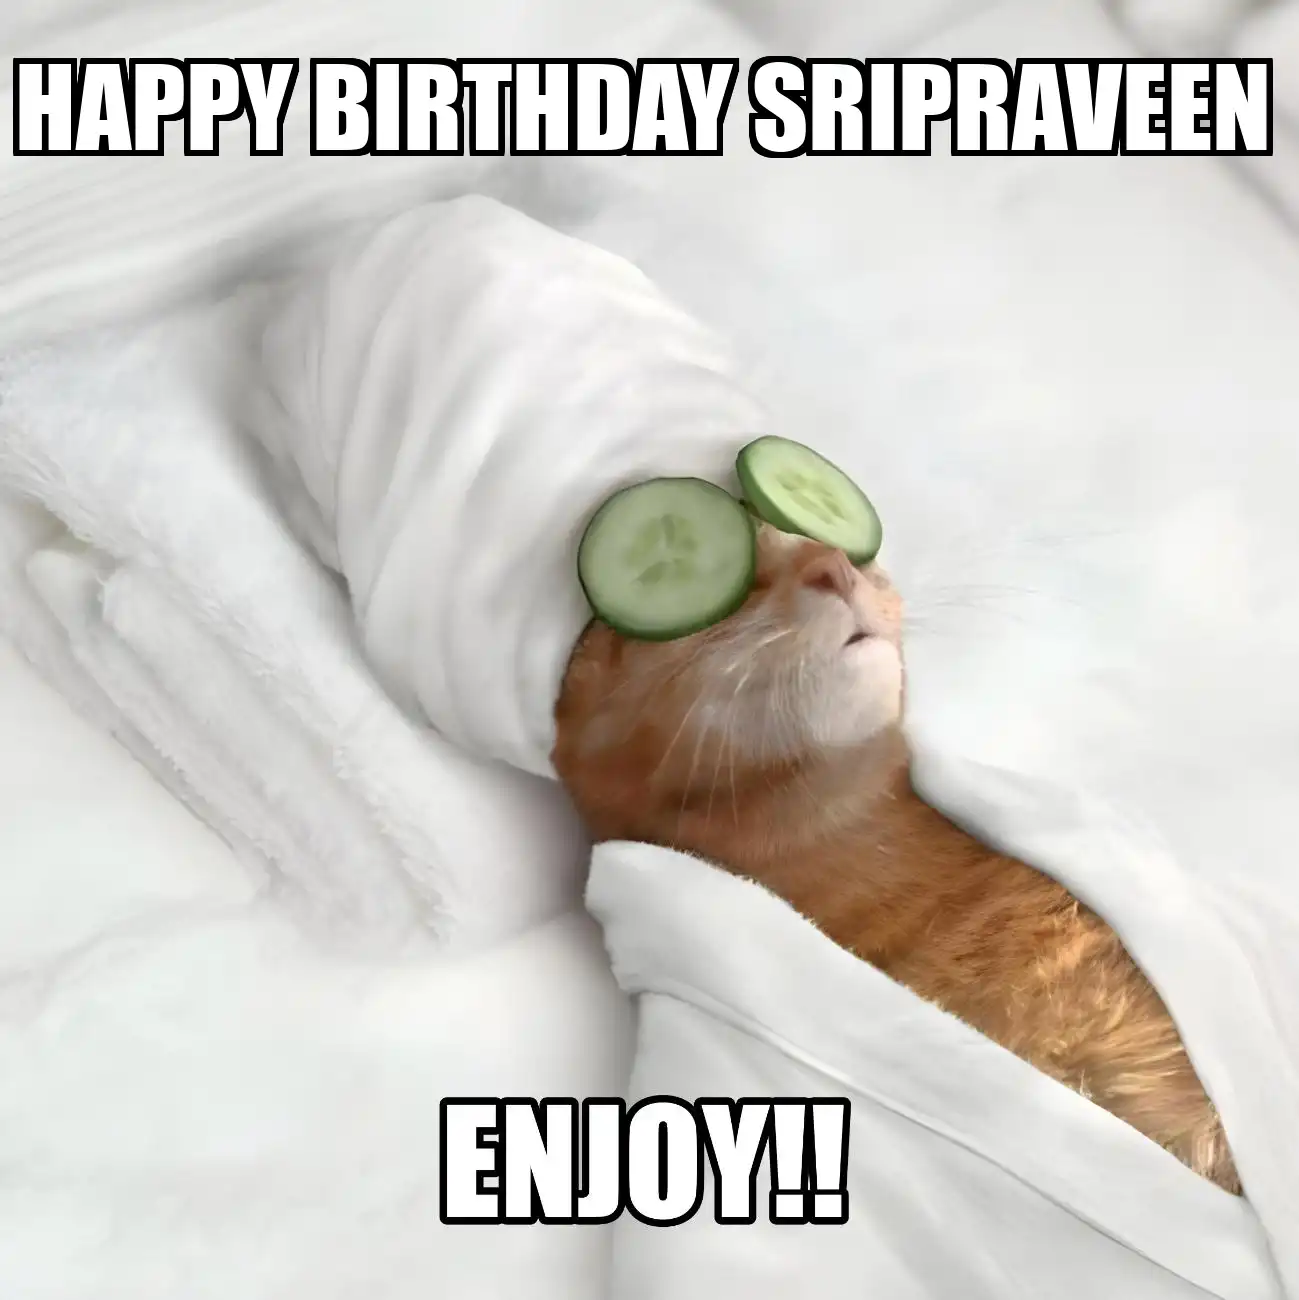 Happy Birthday Sripraveen Enjoy Cat Meme